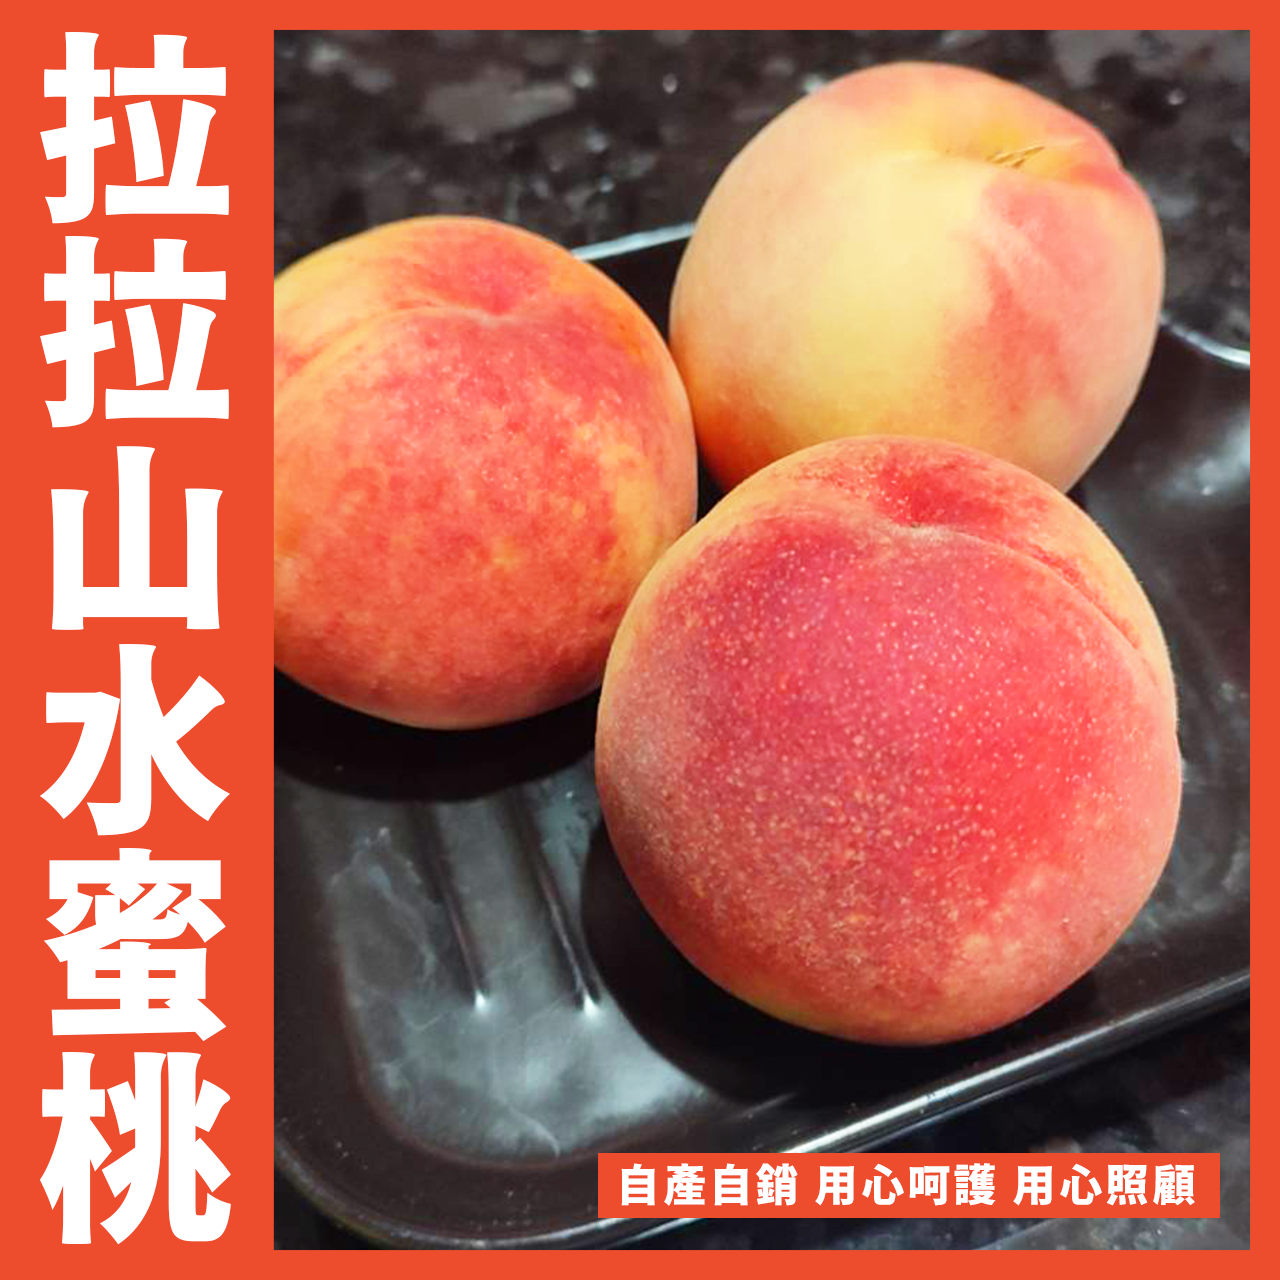 【天天來海鮮】正宗拉拉山巴陵水蜜桃 正值產季